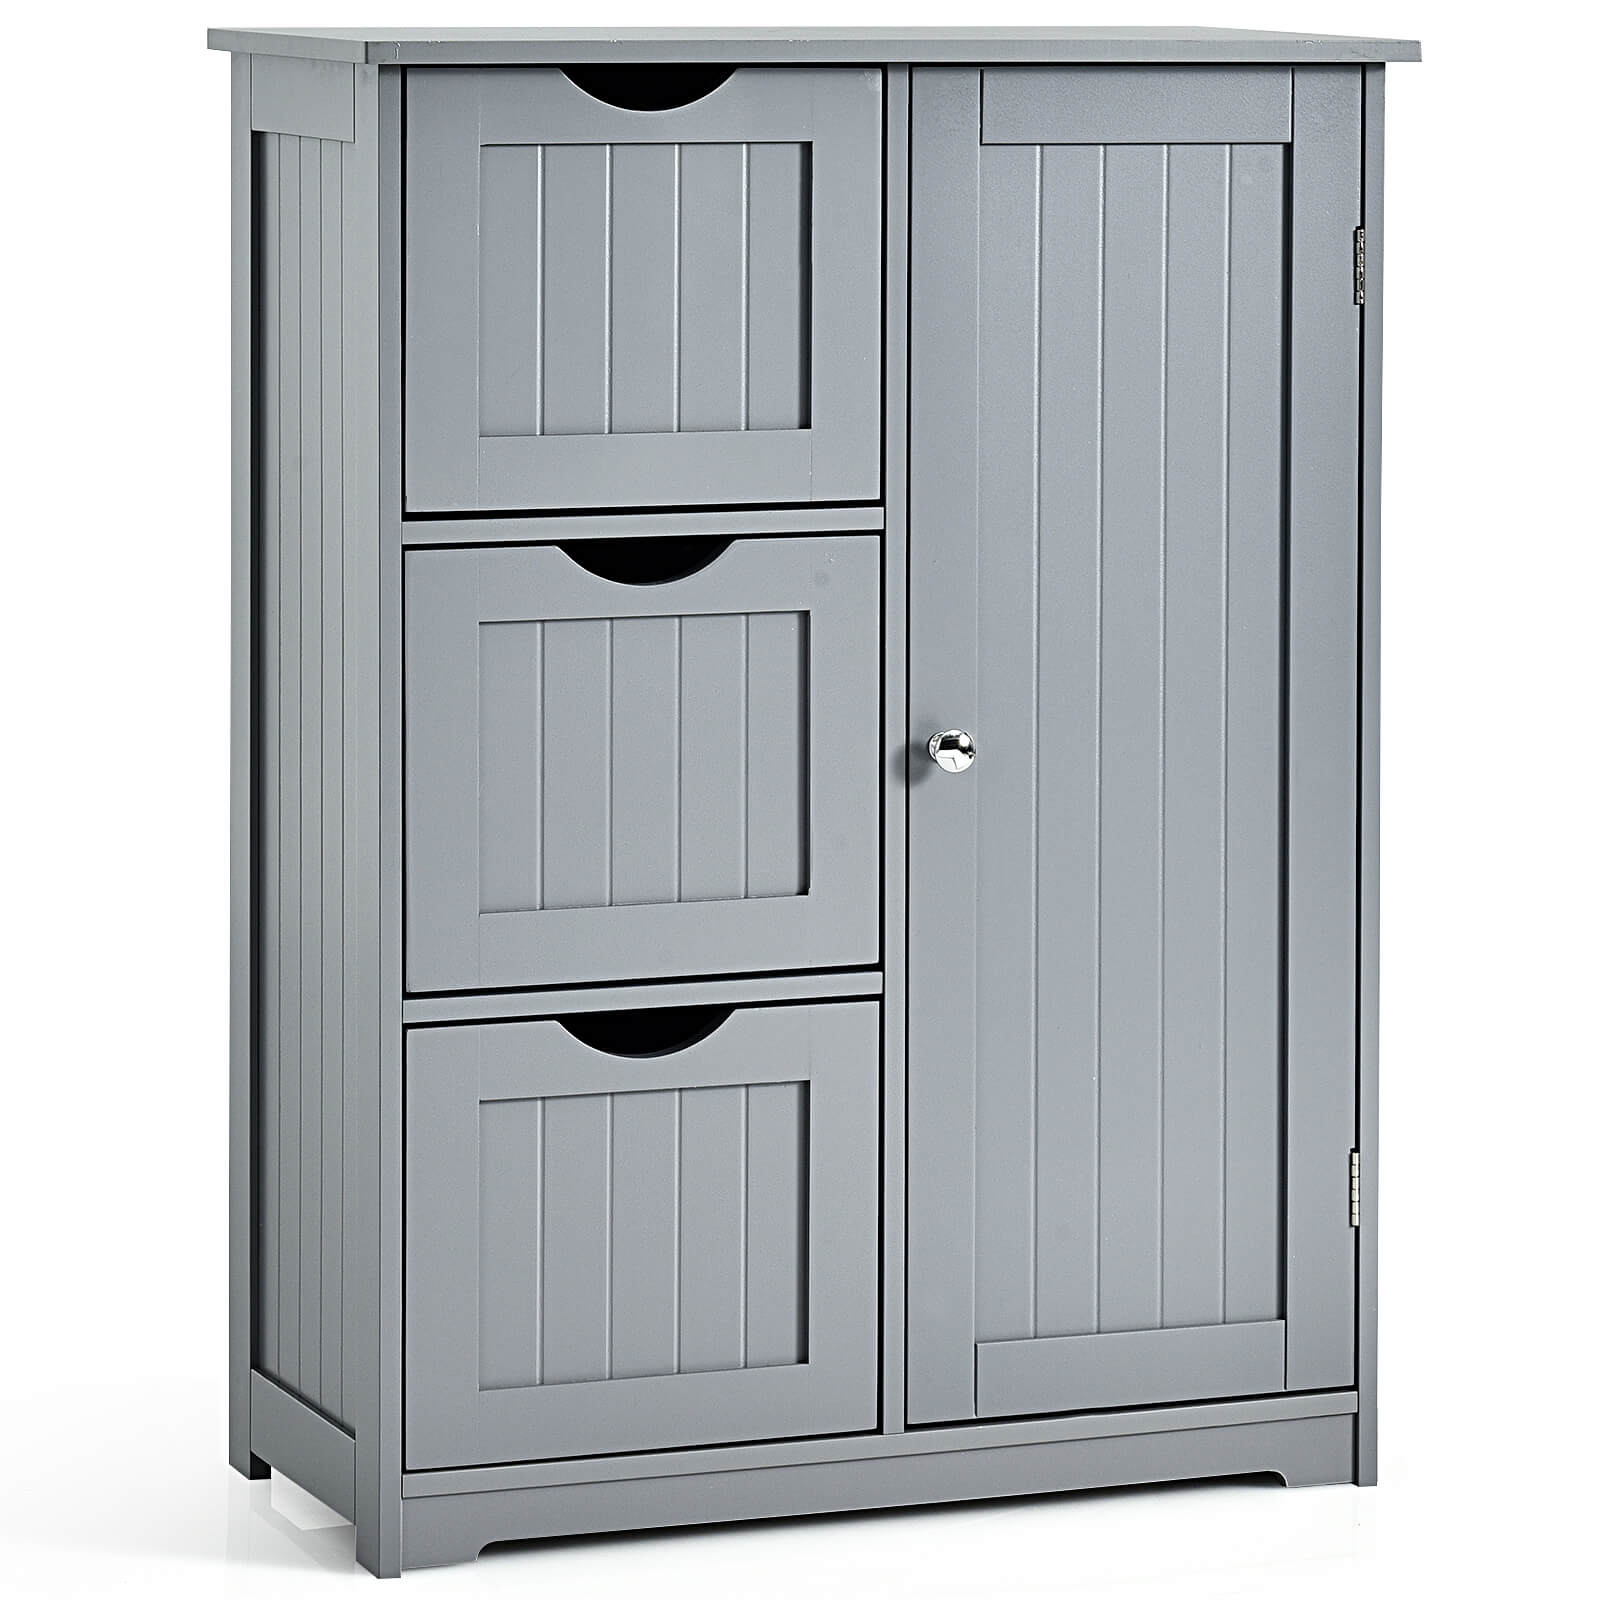 1 Door Freestanding Bathroom Cabinet with 3 Drawers Grey